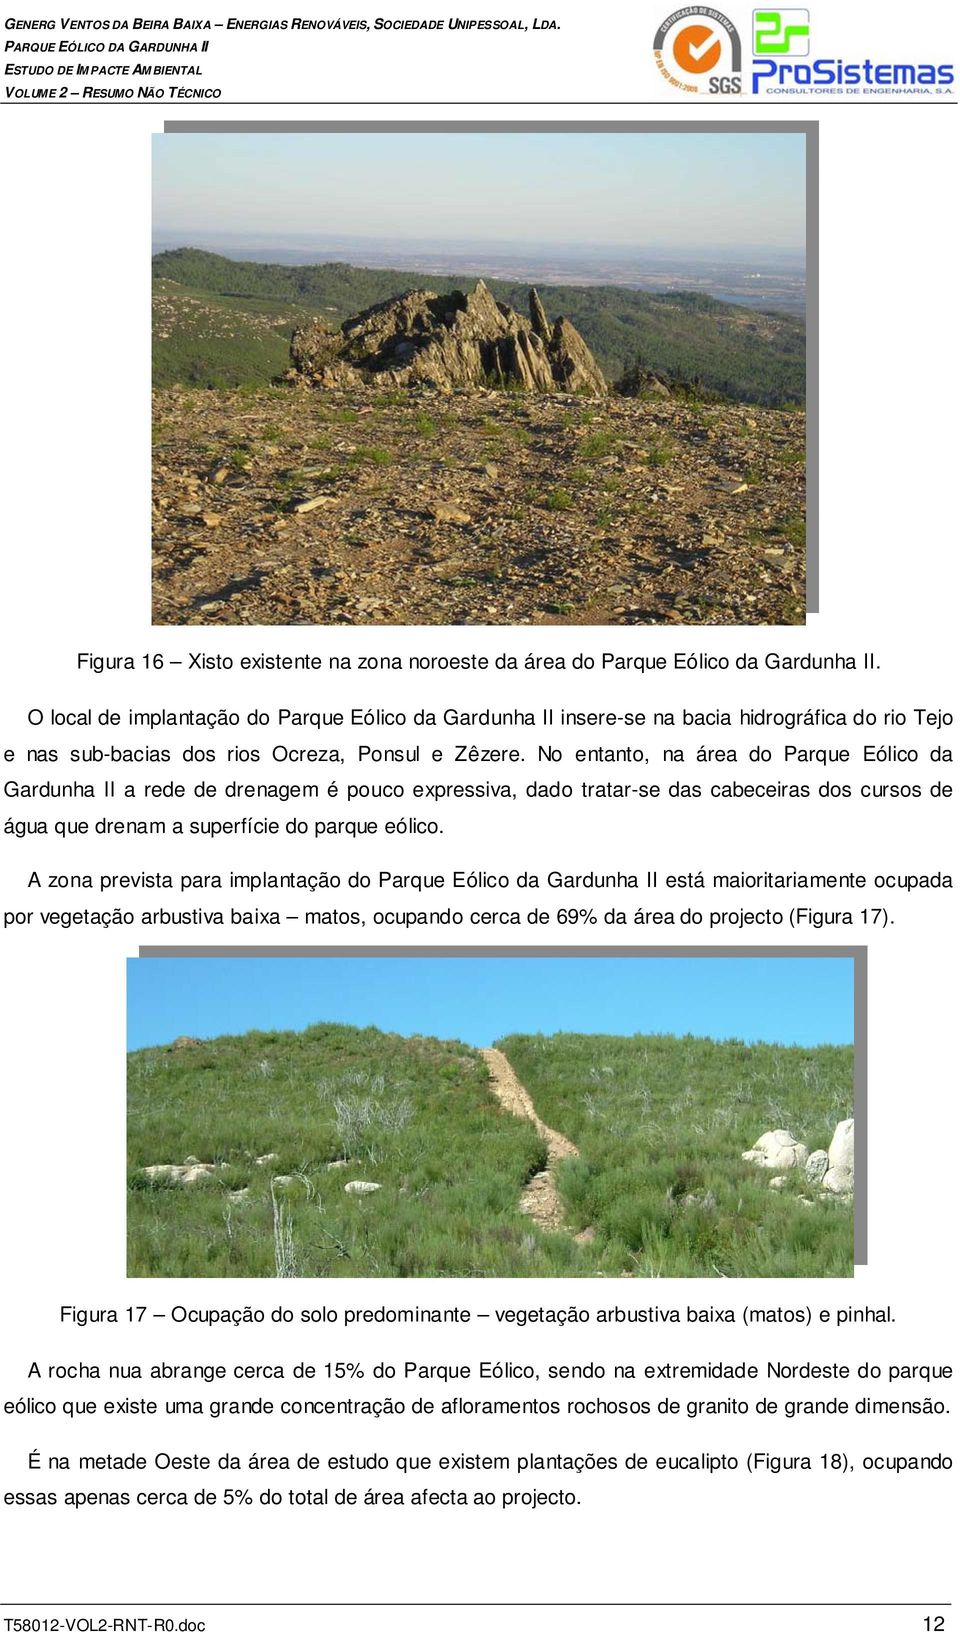 No entanto, na área do Parque Eólico da Gardunha II a rede de drenagem é pouco expressiva, dado tratar-se das cabeceiras dos cursos de água que drenam a superfície do parque eólico.